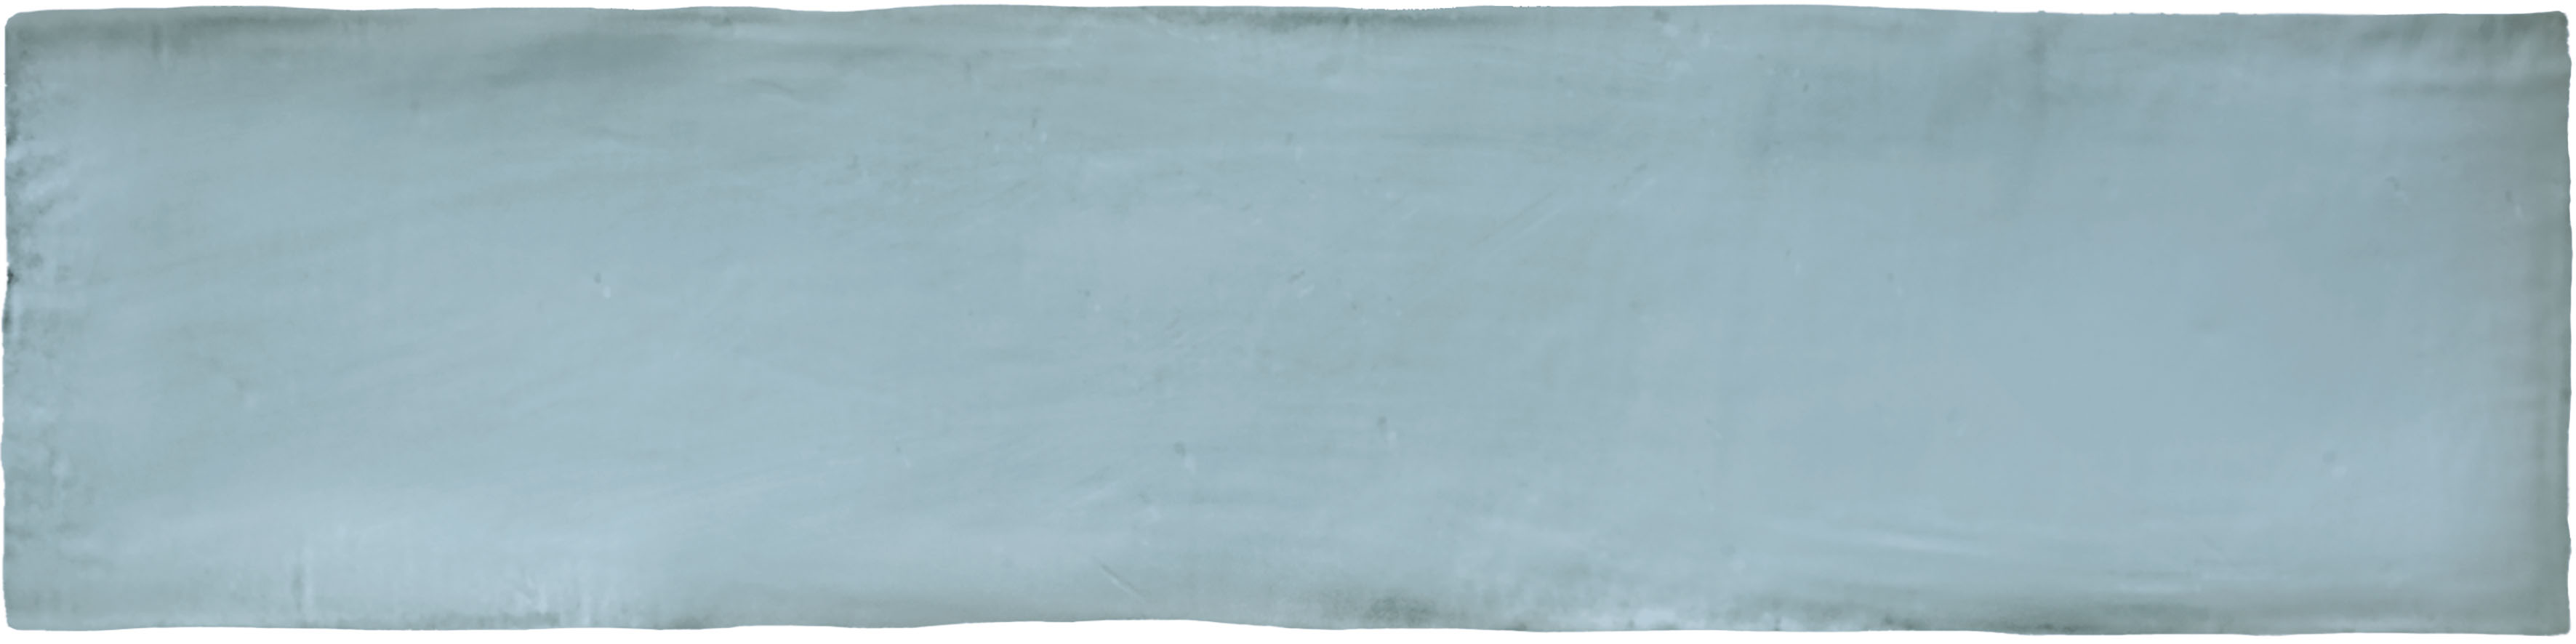 Catalea Gres Lund Metrofliesen Blau matt 7,5x30 cm  